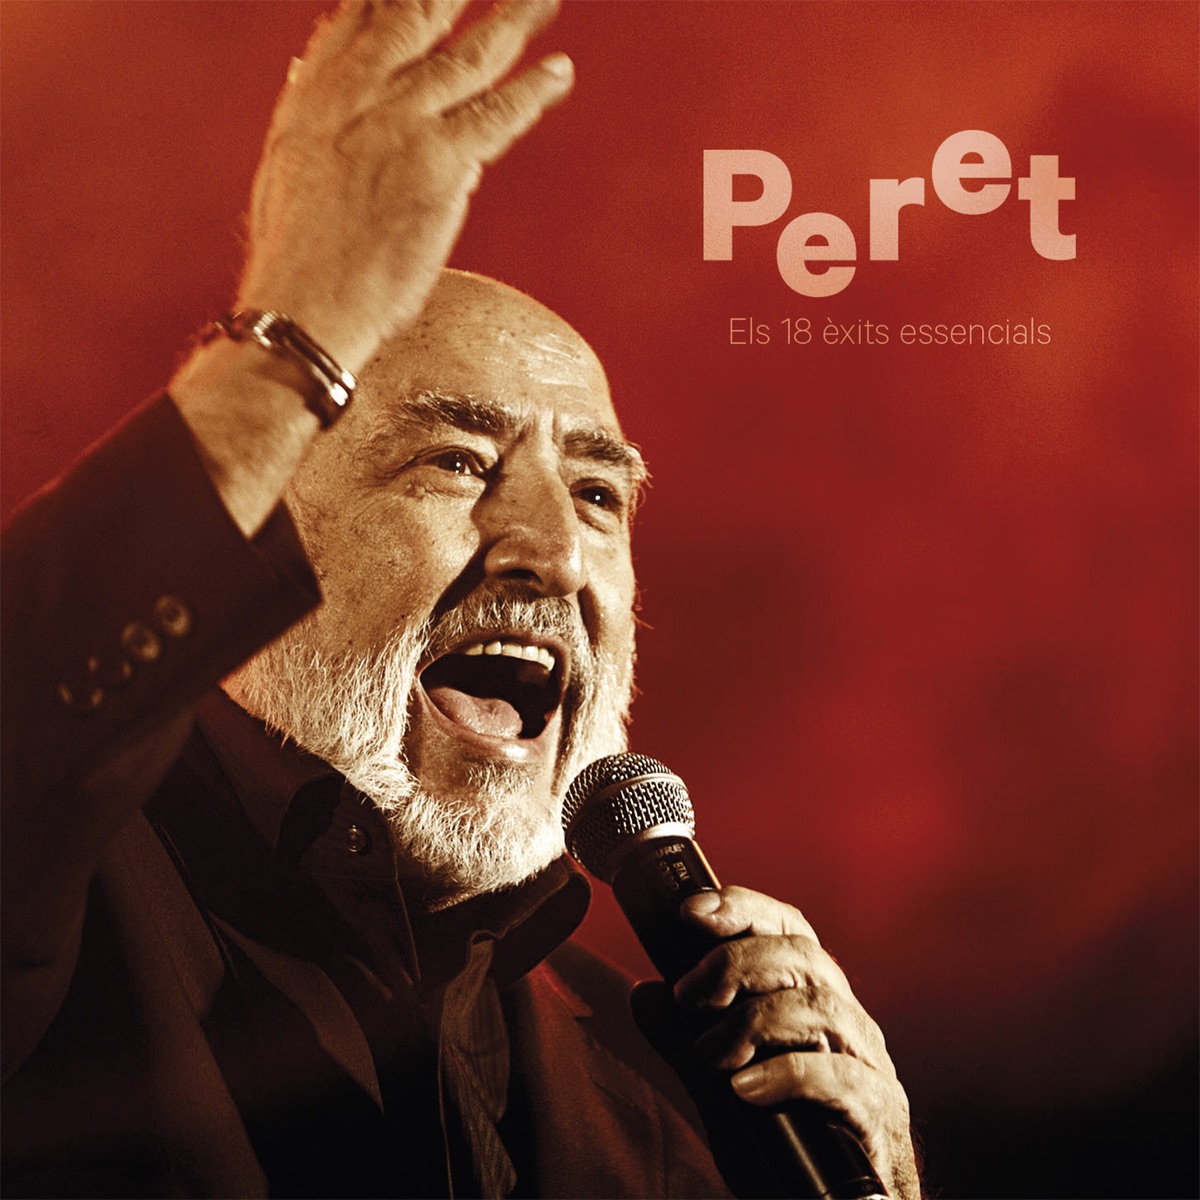 La Puntita - Album by Peret - Apple Music